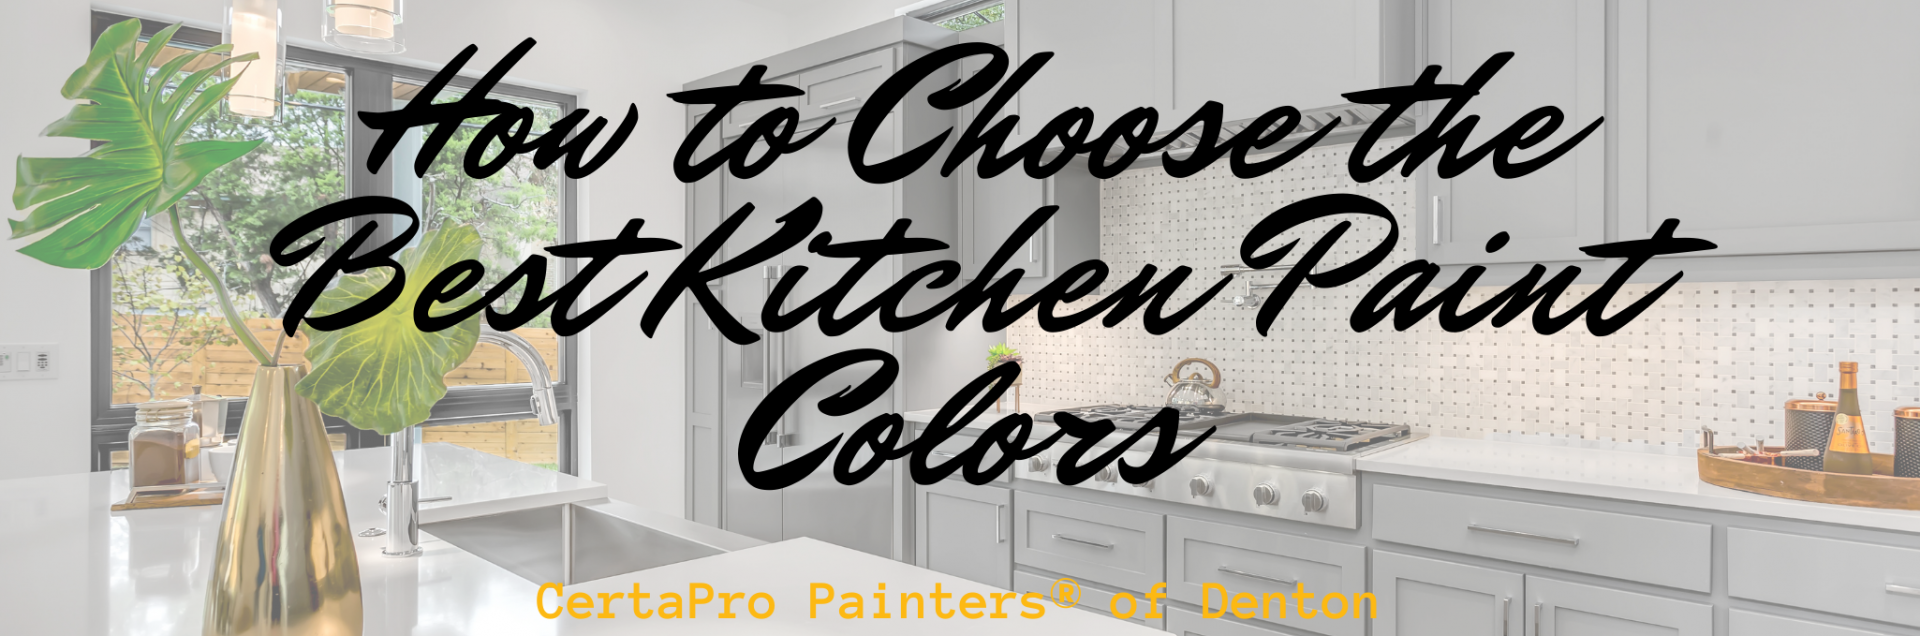 https://certapro.com/denton/wp-content/uploads/sites/1618/2020/10/How-to-Choose-the-Best-Kitchen-Paint-Colors-Denton-1920x636.png